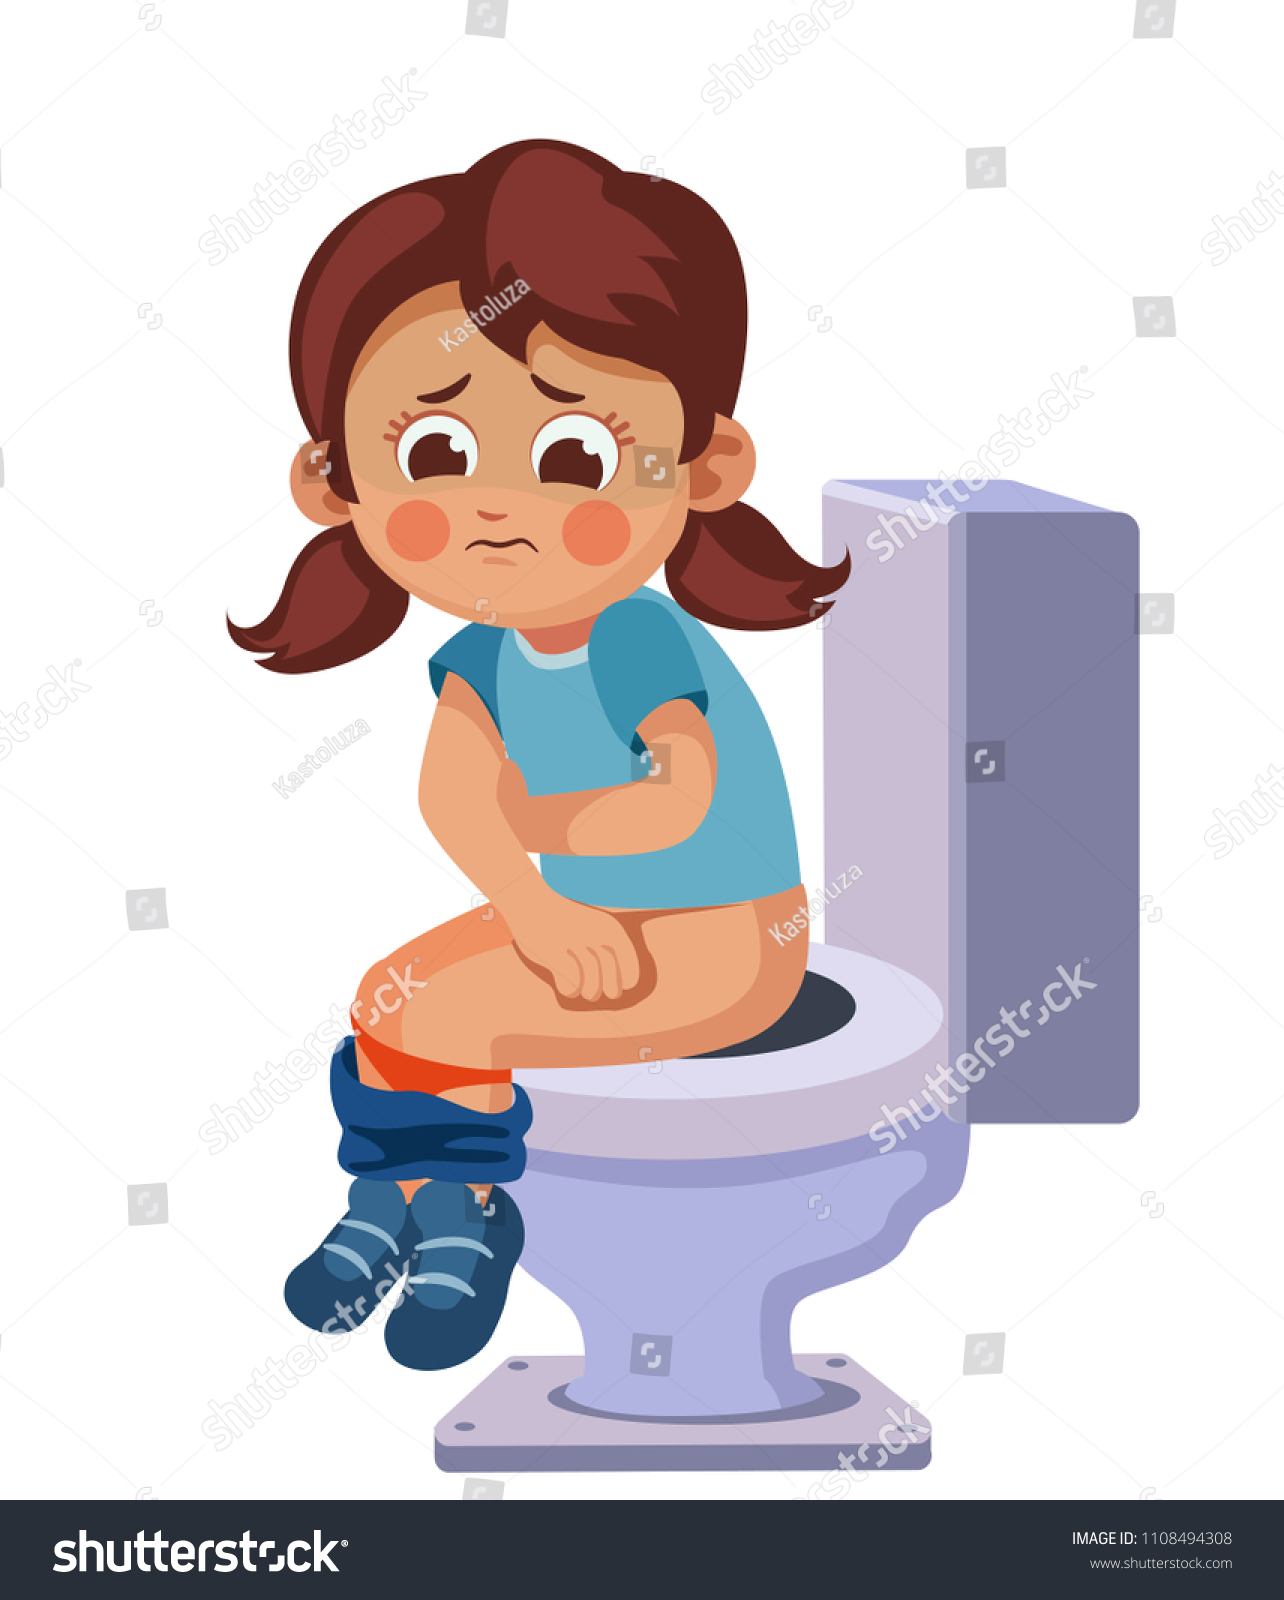 Побежала туалета. Девочка в туалете. Ребенок сидит на унитазе. Женщина на горшке. Девушка сидит на унитазе.